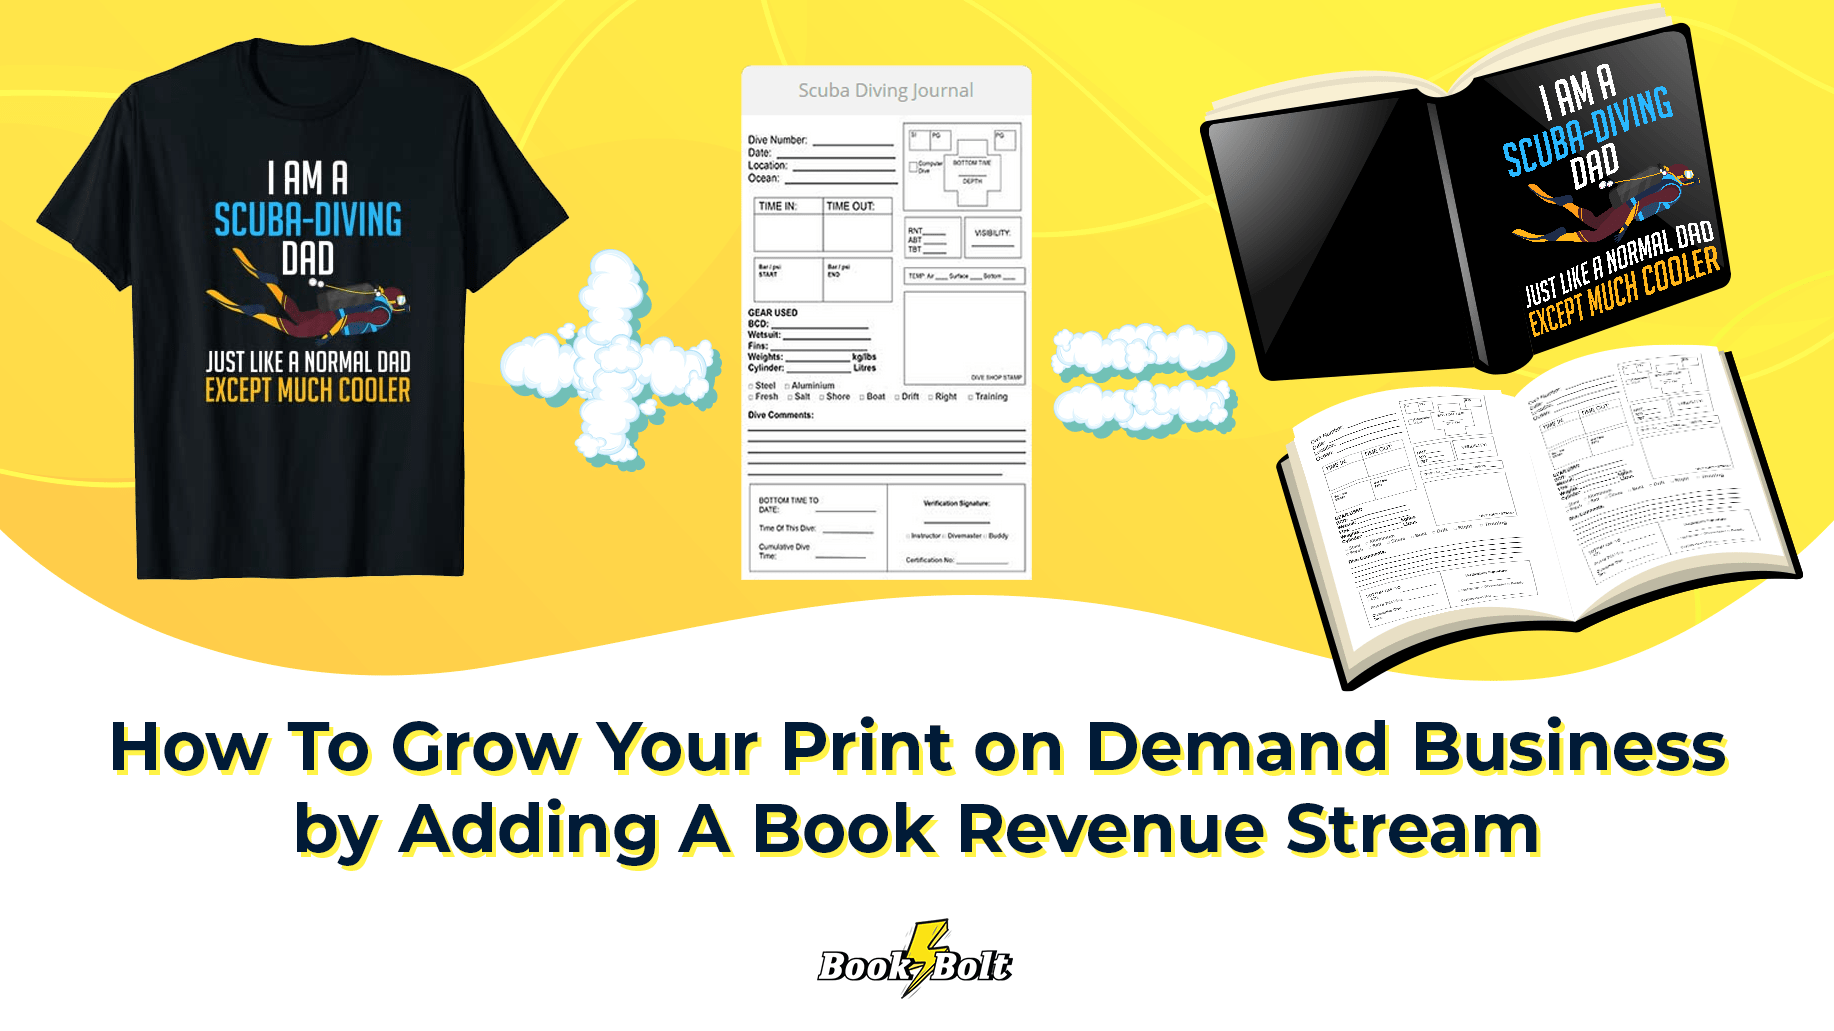 Book Bolt Print on Demand Business